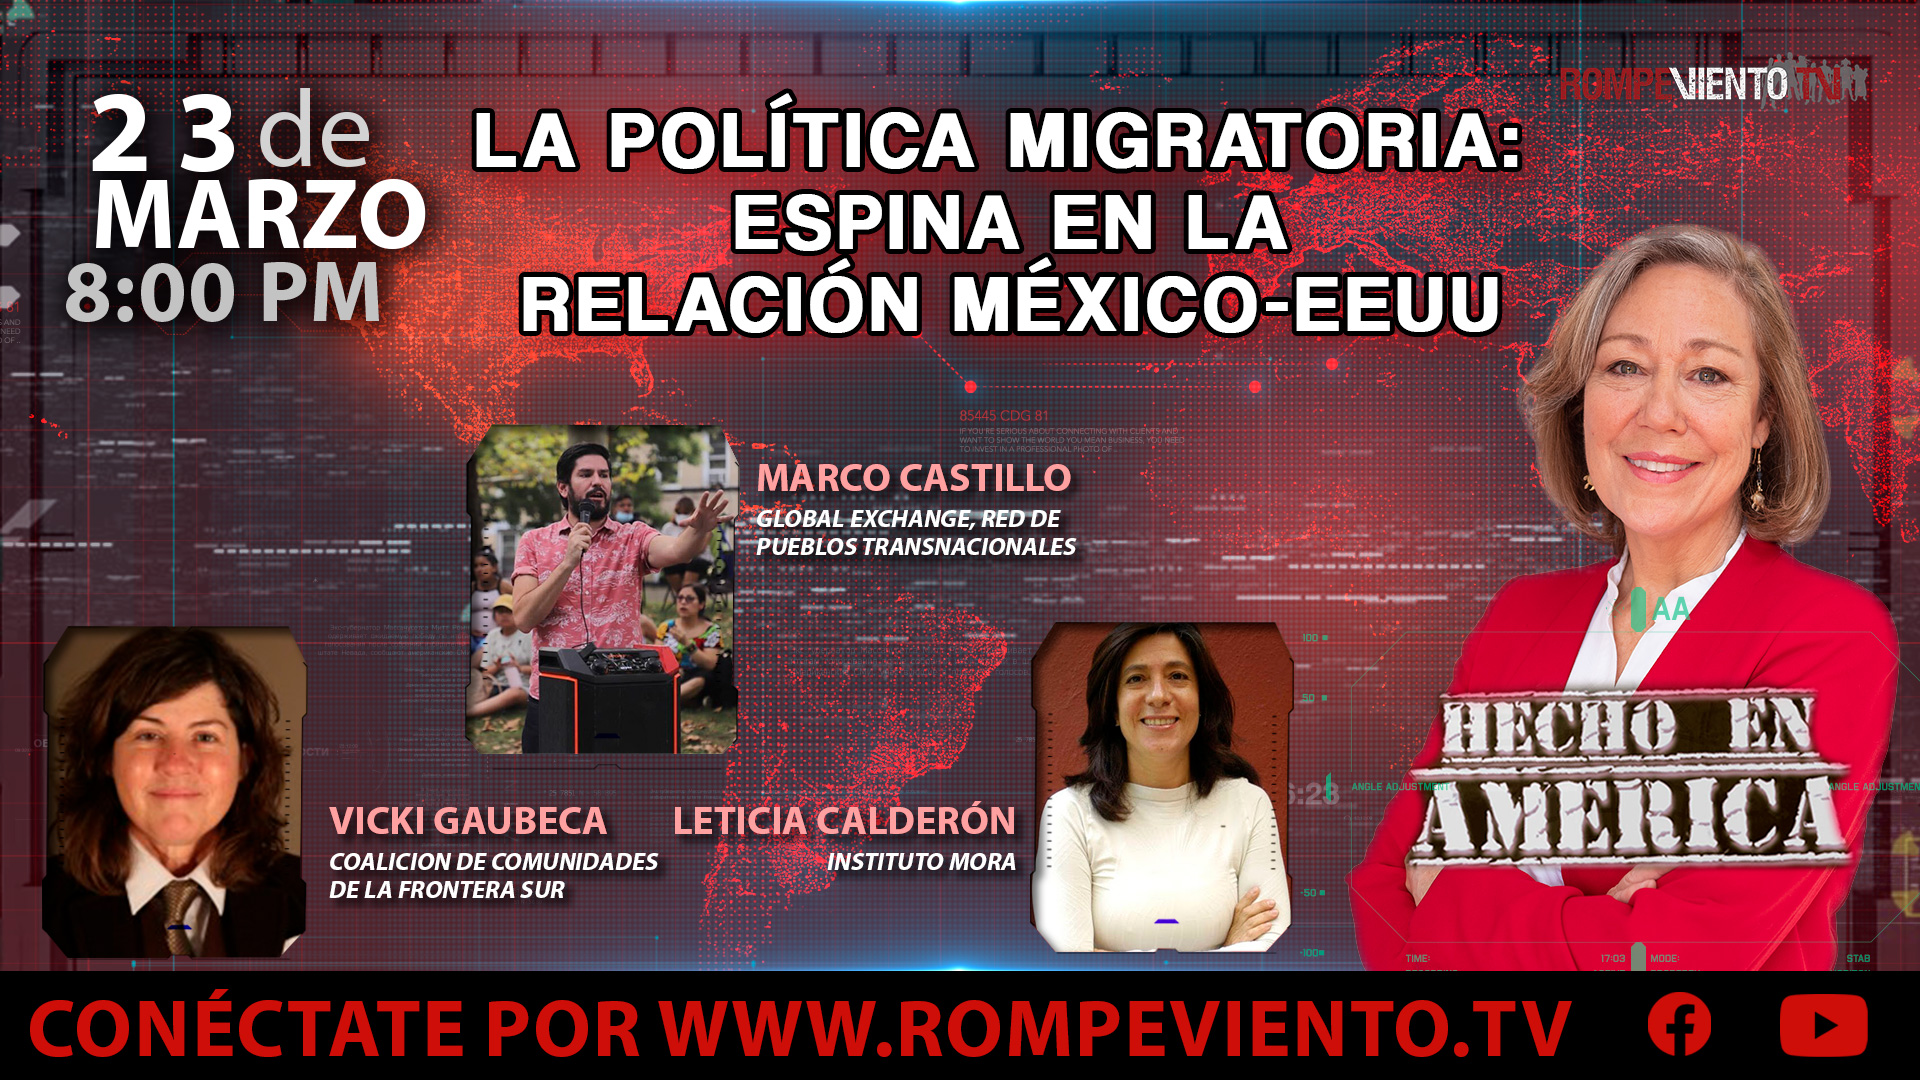 La política migratoria: espina en la relación México. EEUU - Hecho en América